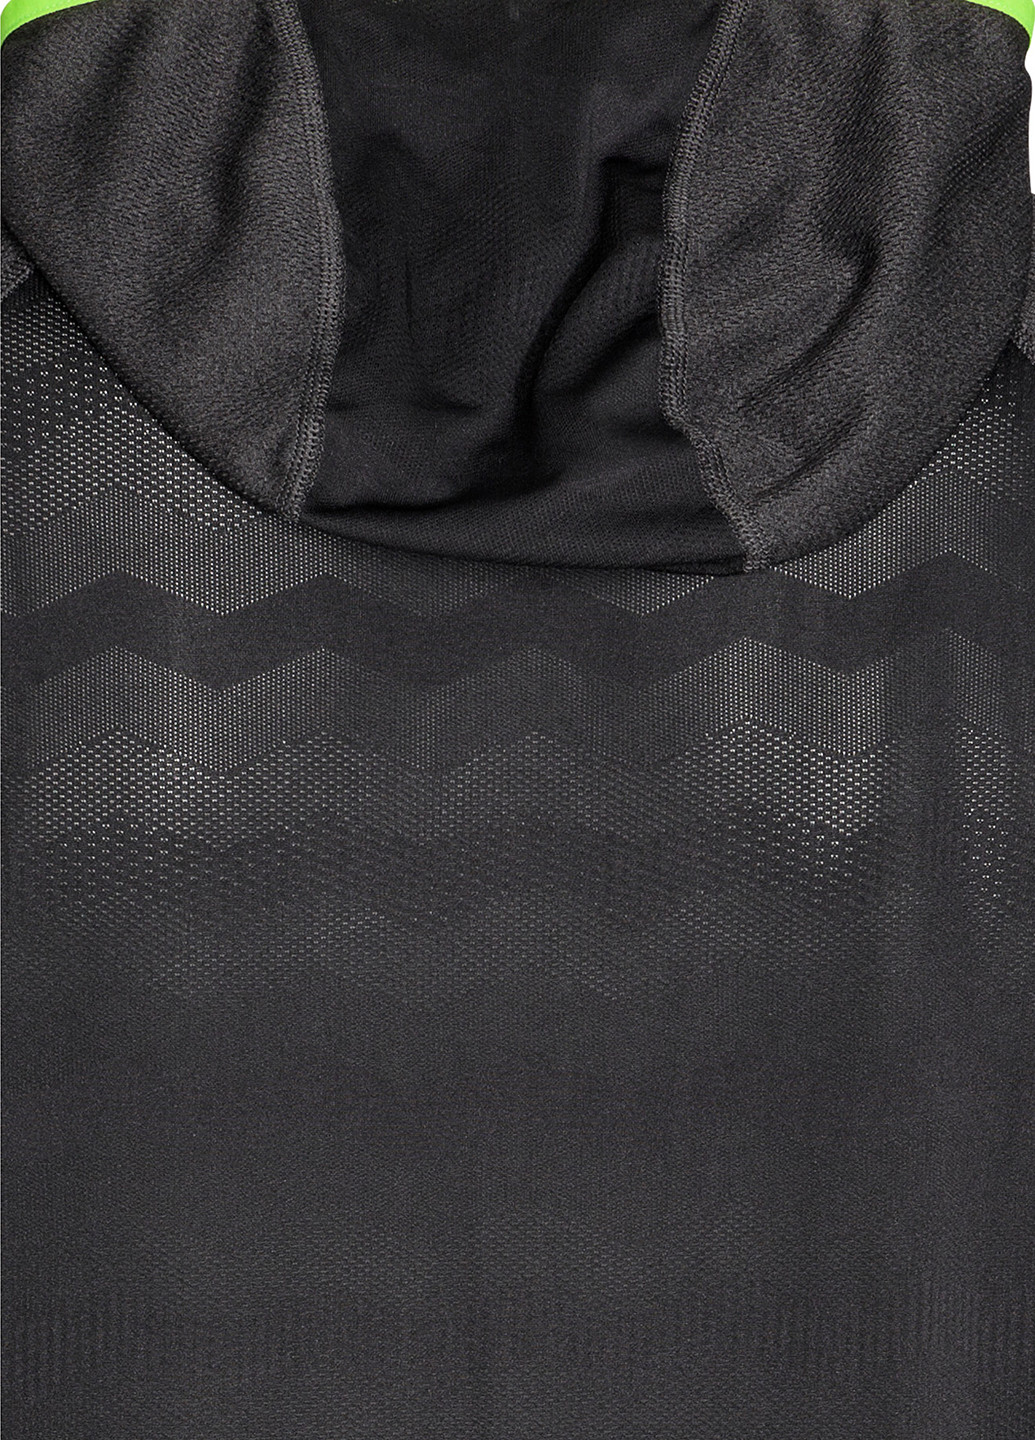 Реглан H&M однотонный тёмно-серый спортивный полиэстер